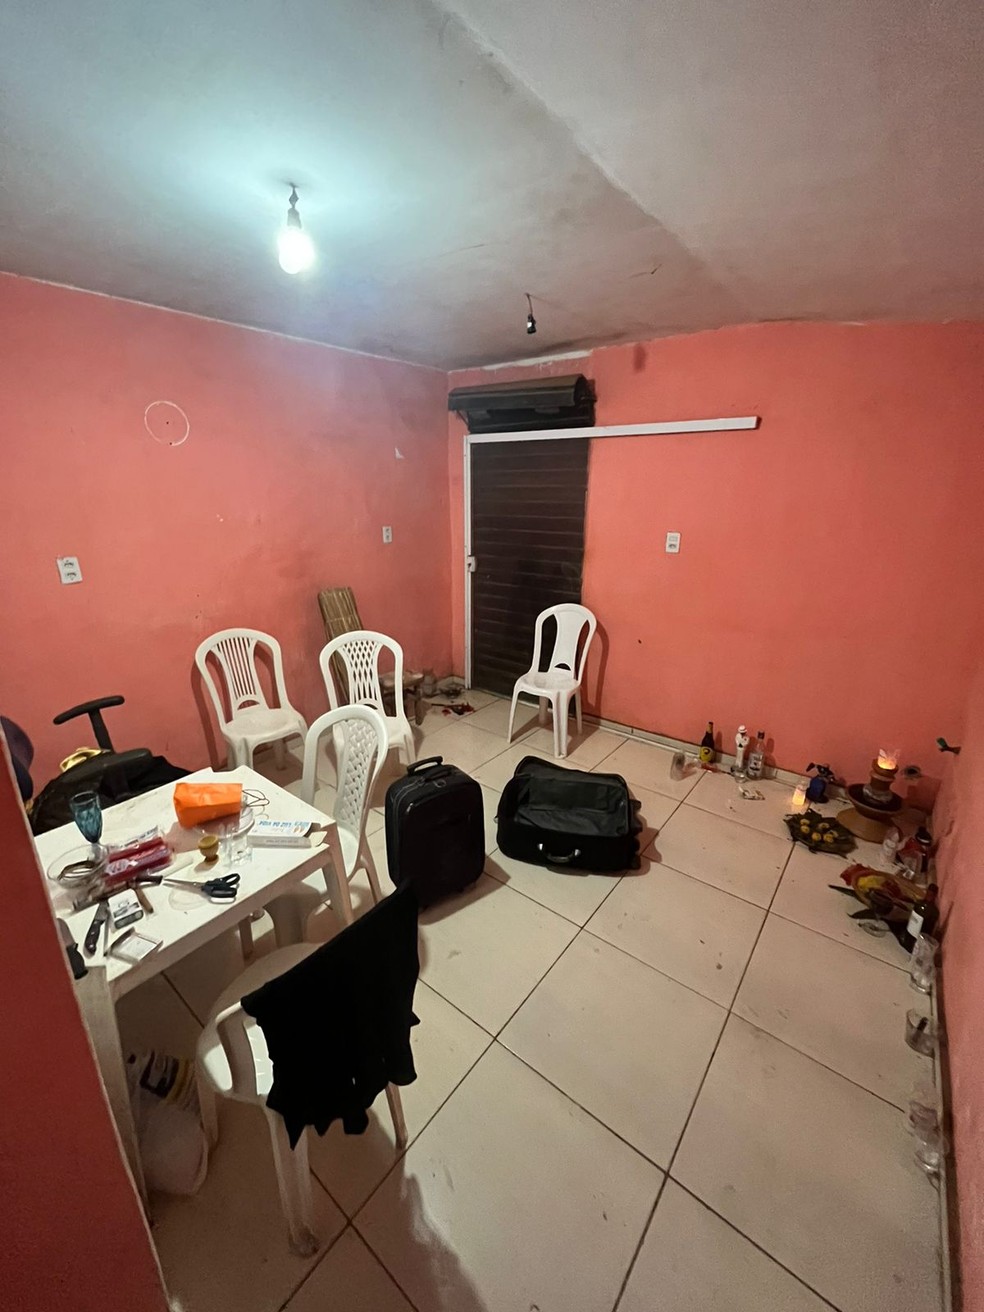 Polícia encontrou velas, objetos de madeira e estatuetas que seriam usadas em rituais — Foto: Divulgação/Polícia Civil